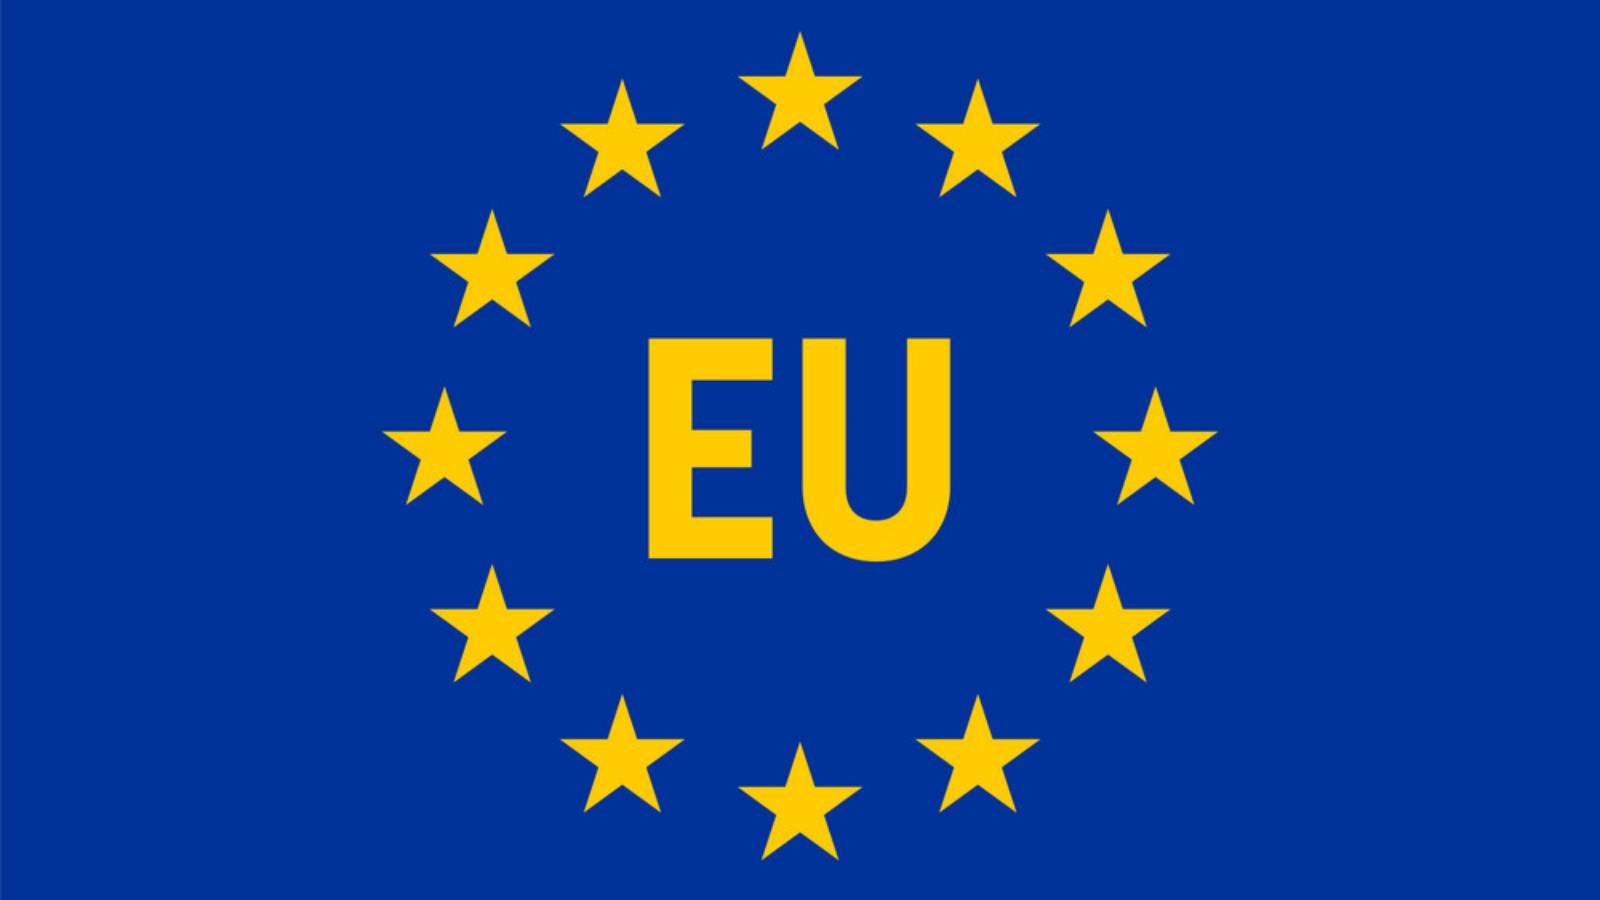 Euroopan komissio ilmoittaa hyväksyvänsä uuden avustusohjelman Romanialle